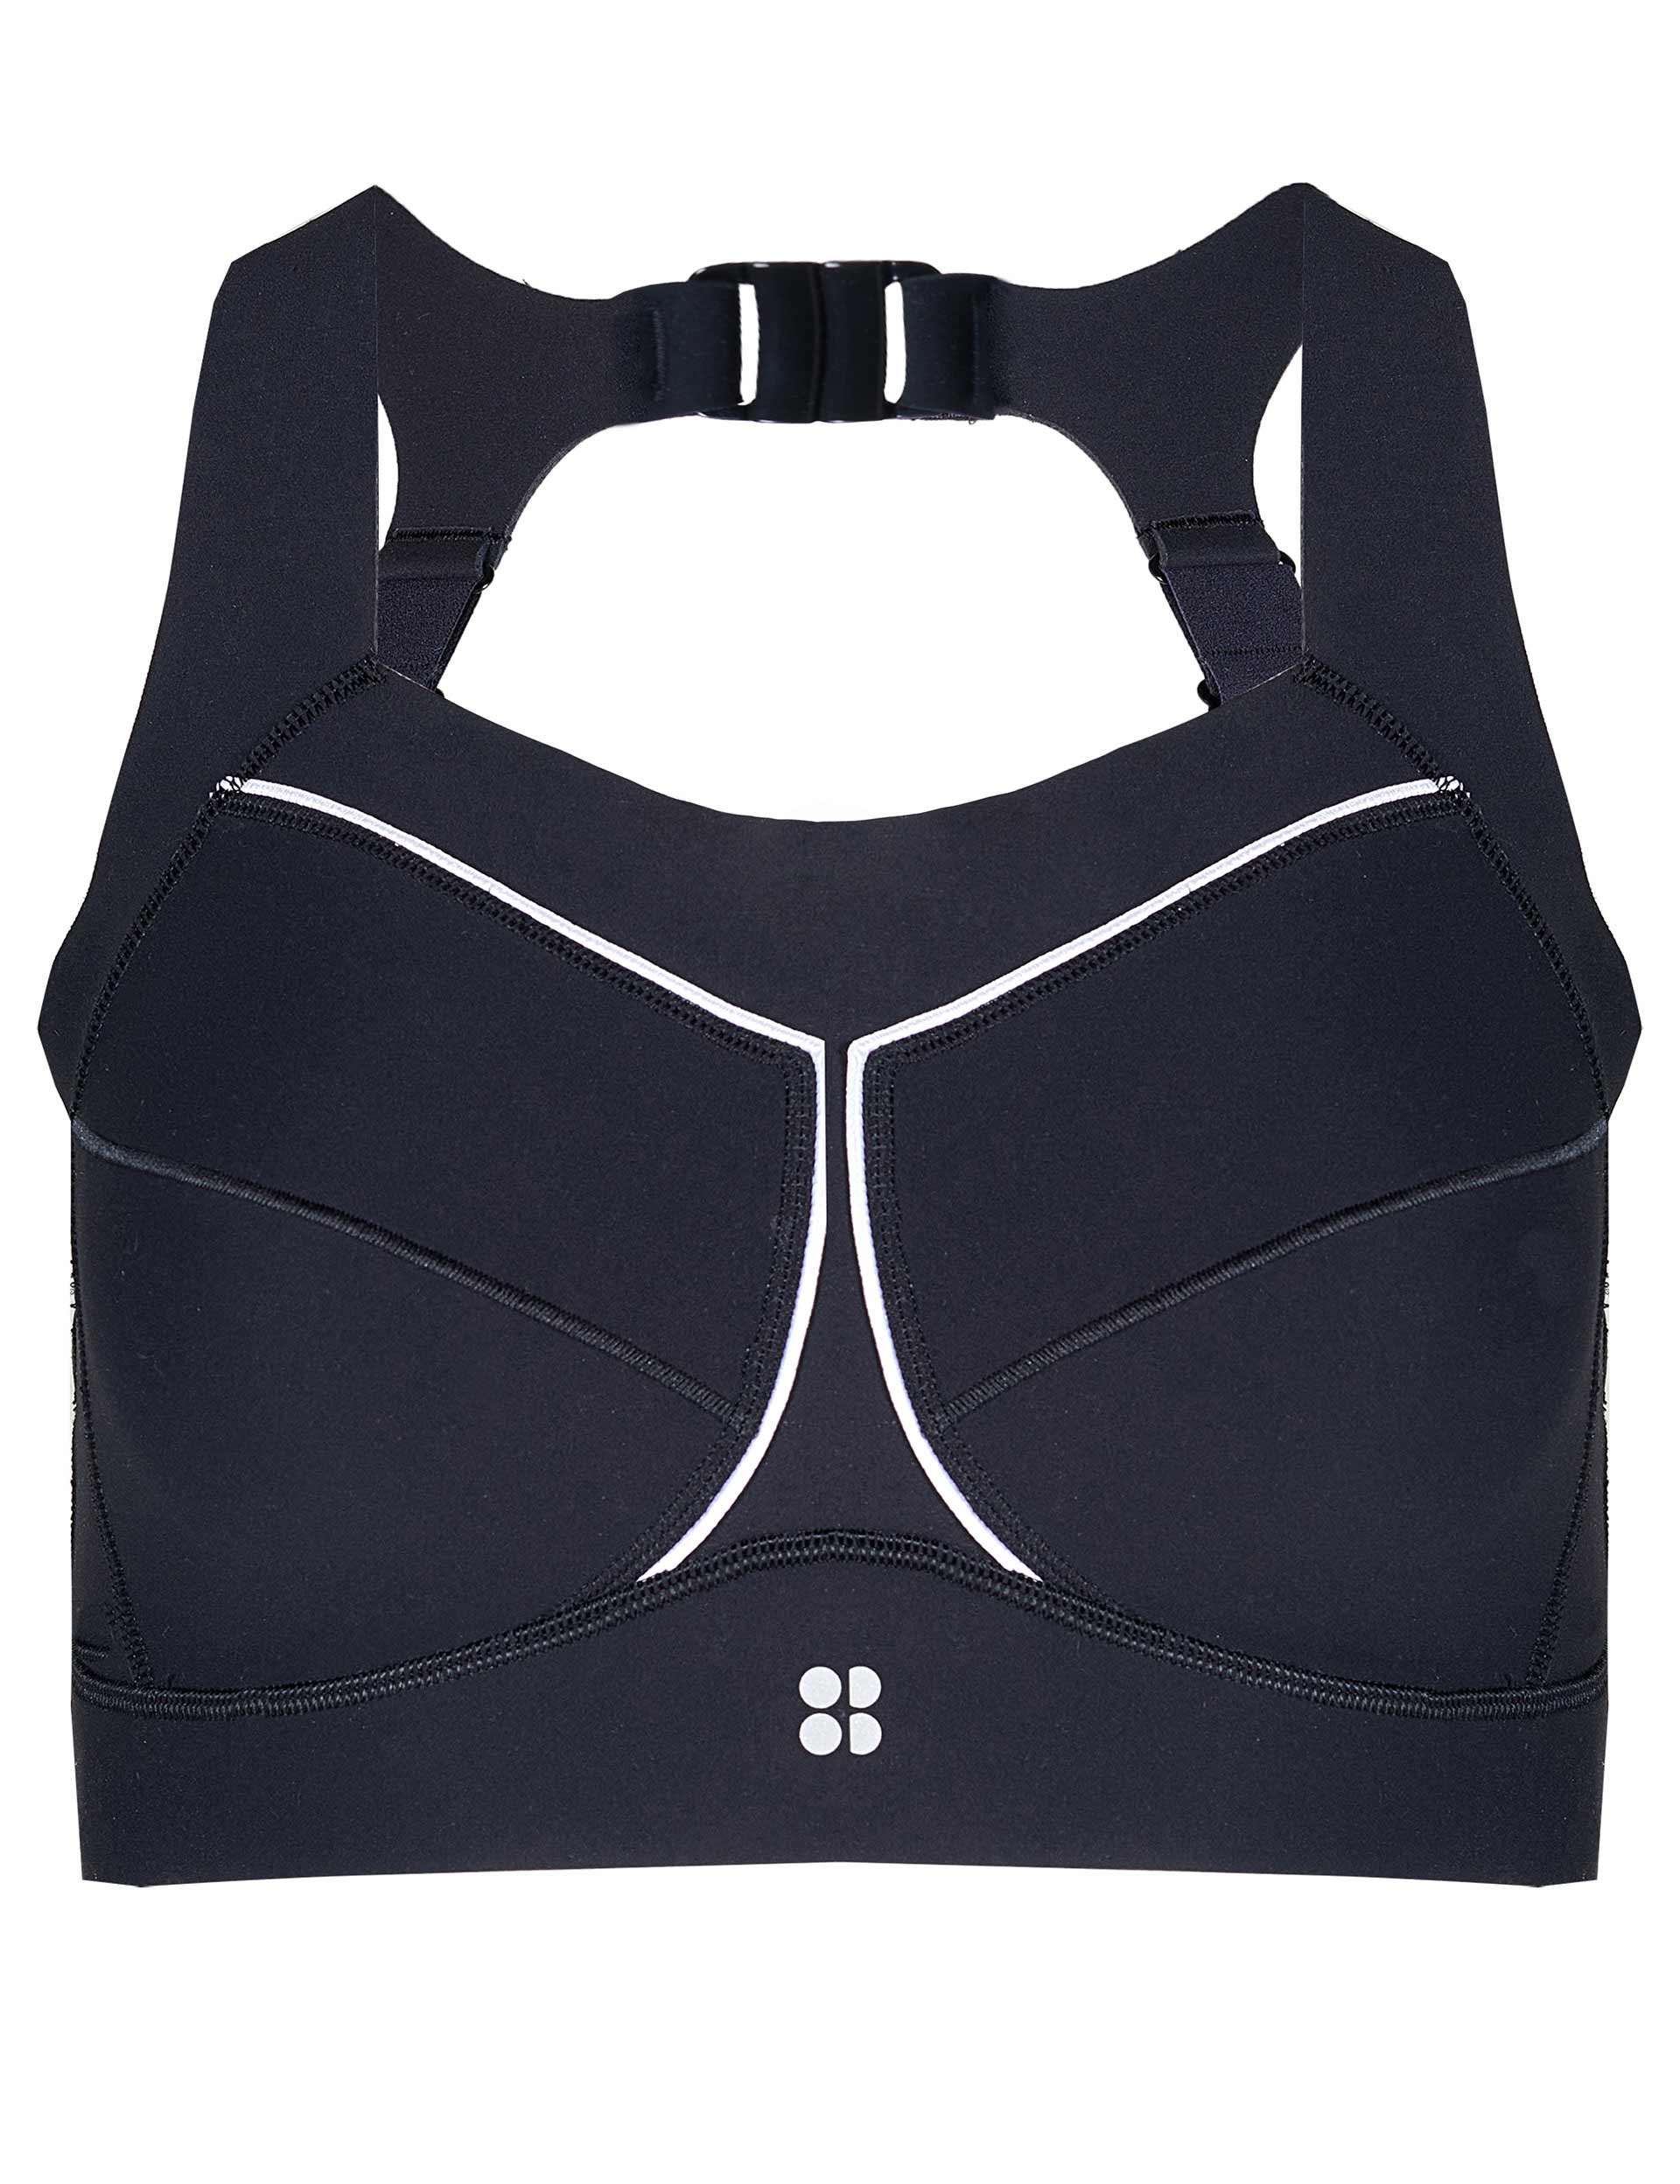 Sweaty Betty Studio open-back stretch-jersey sports bra Bra Top Size X –  Afashionistastore